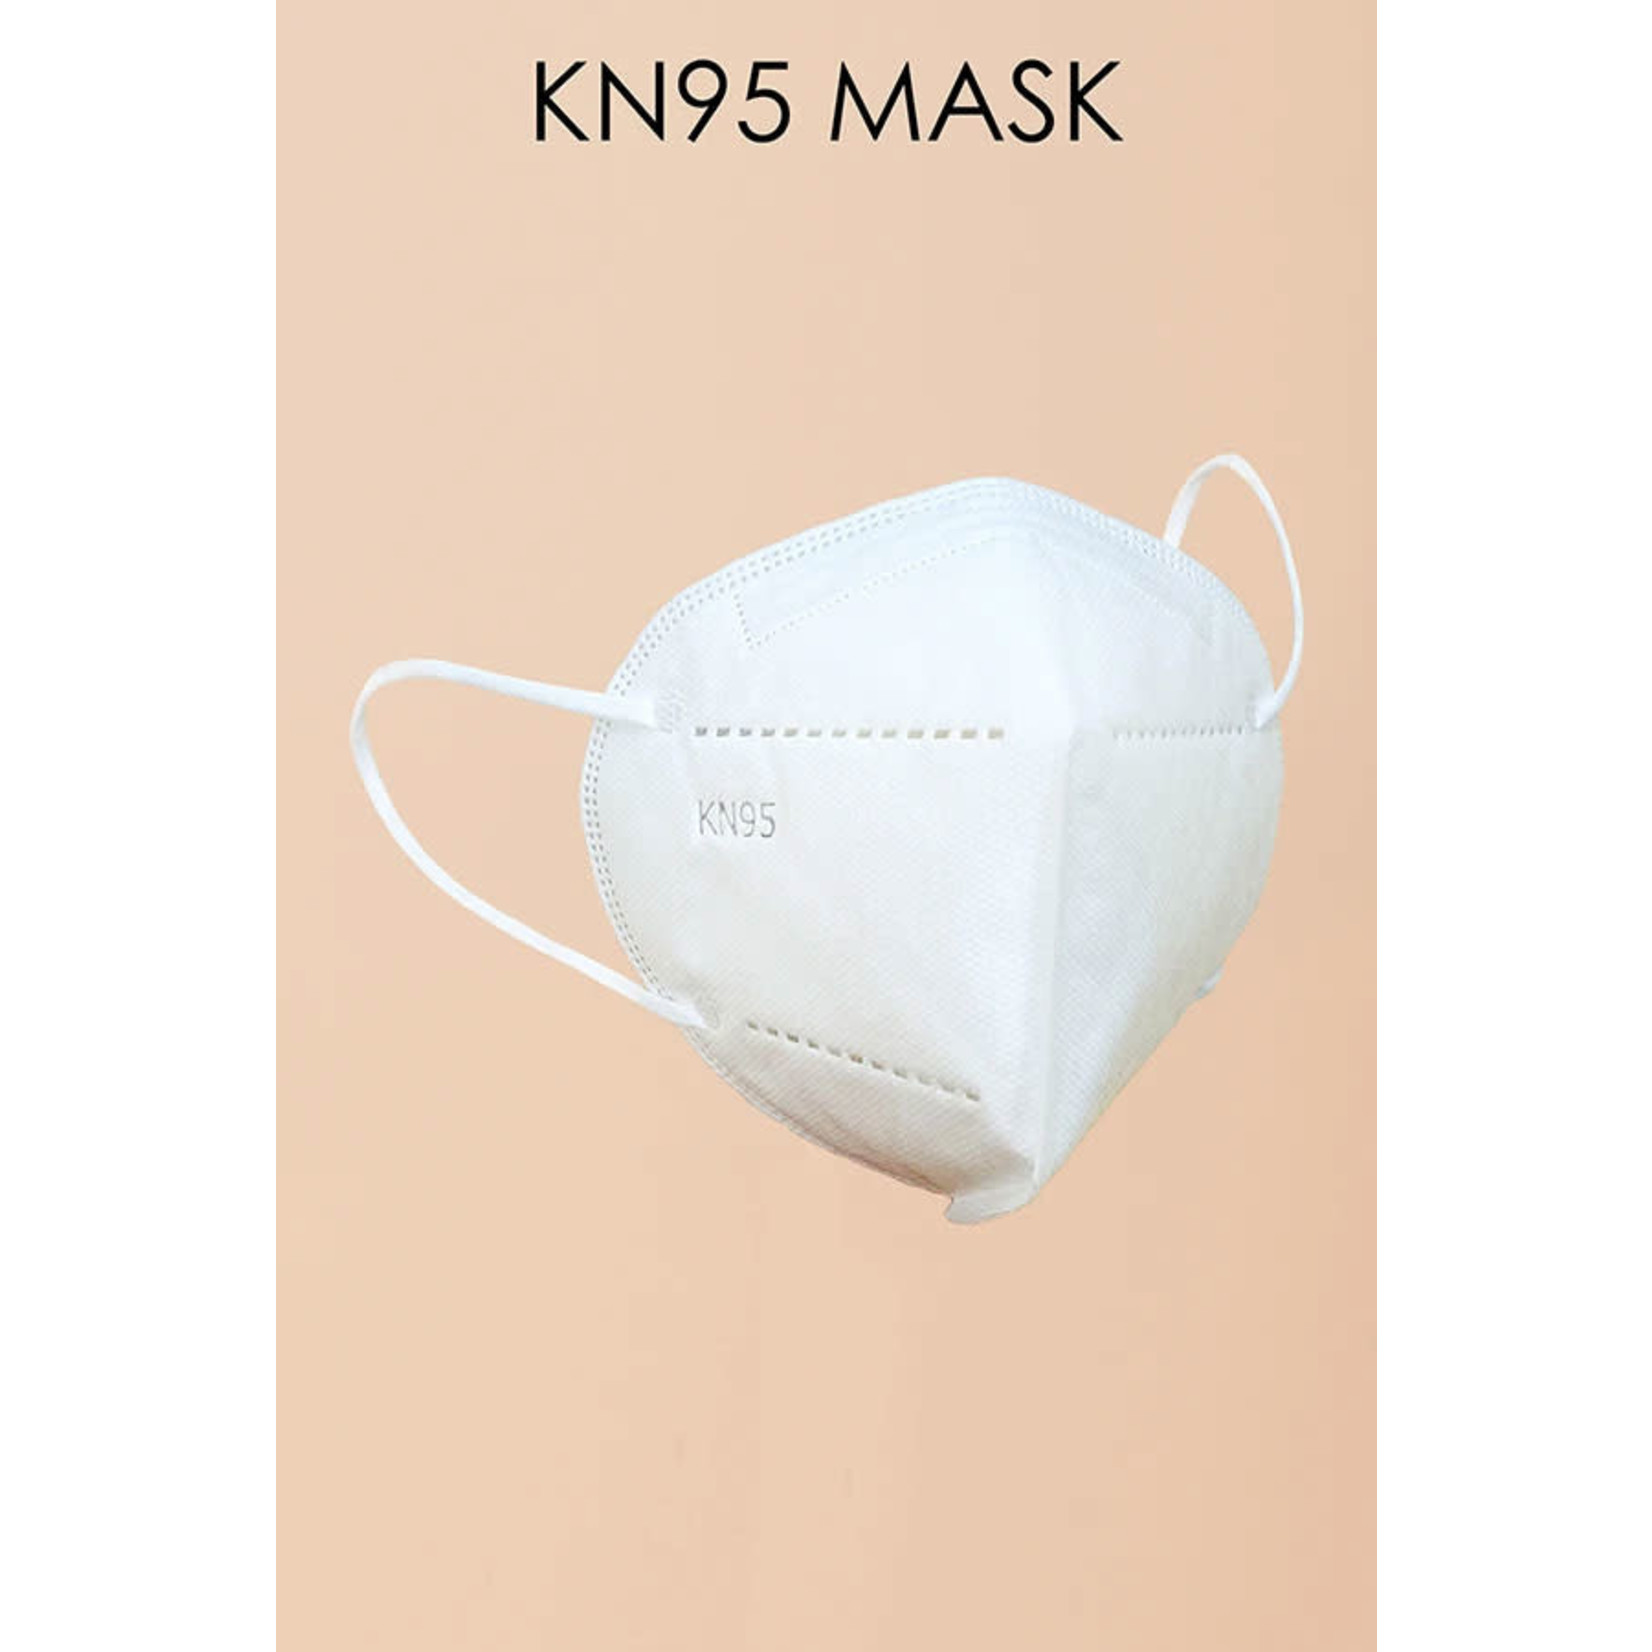 HYFVE KN95 Mask